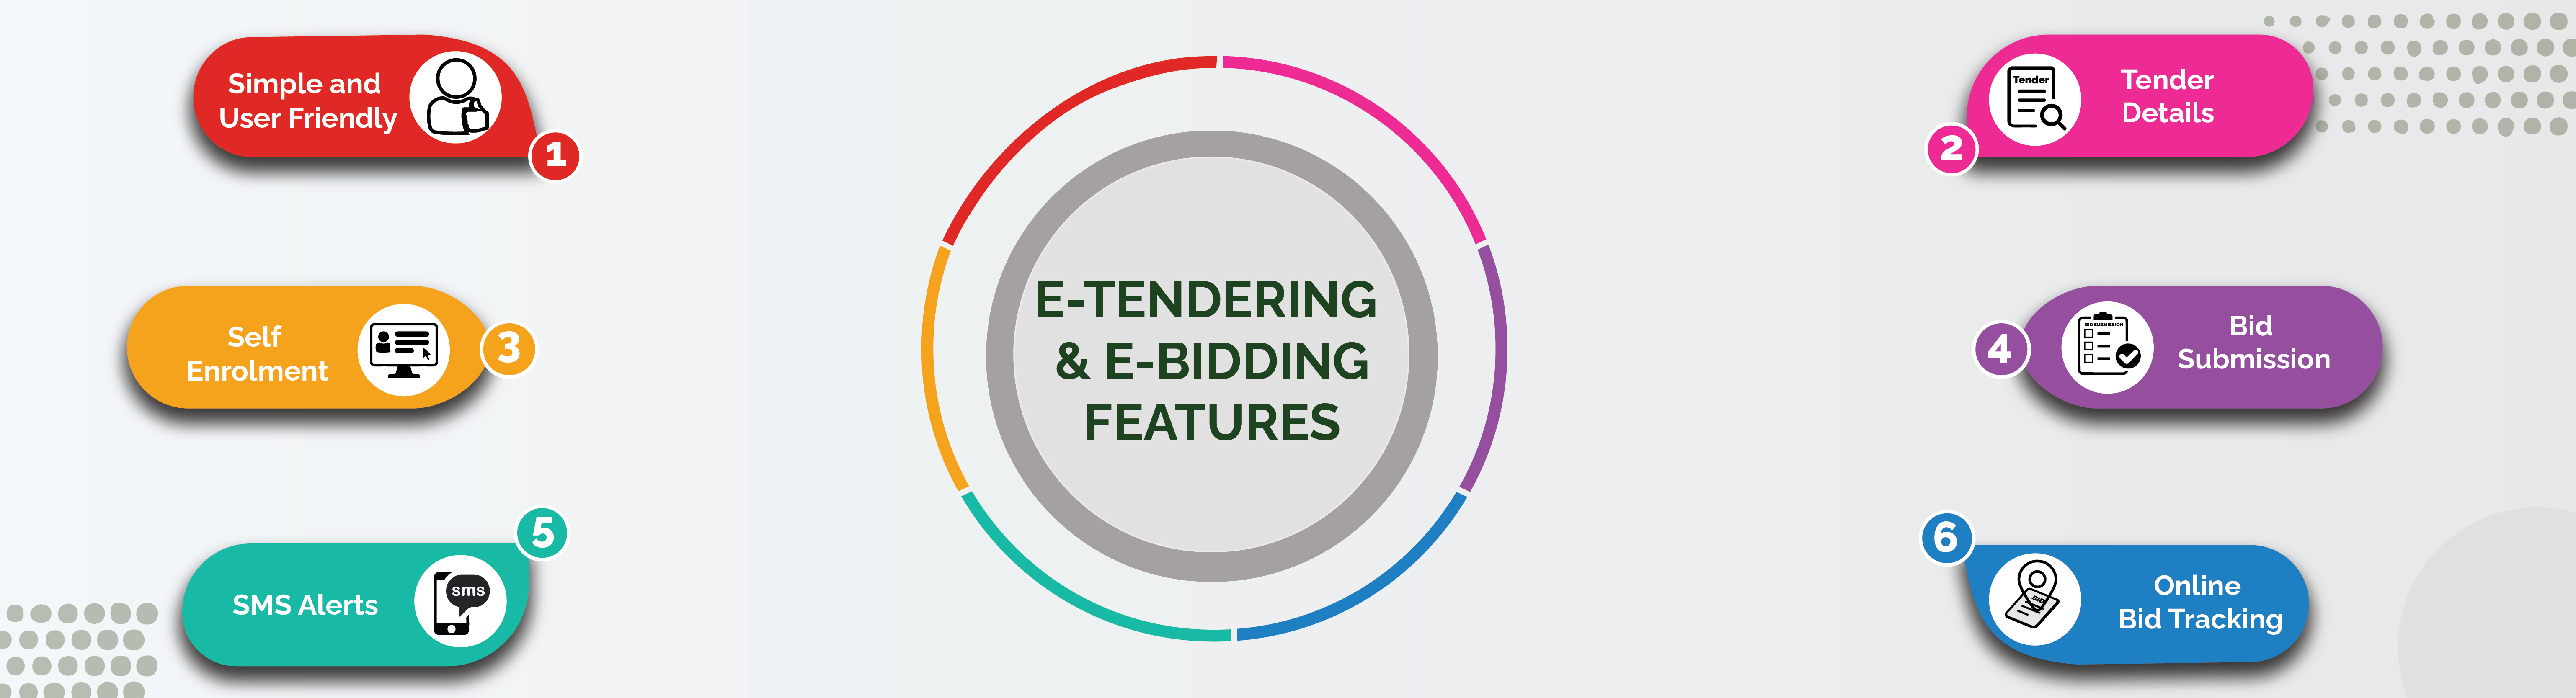 ML&C E-Tender & E-Bidding Features